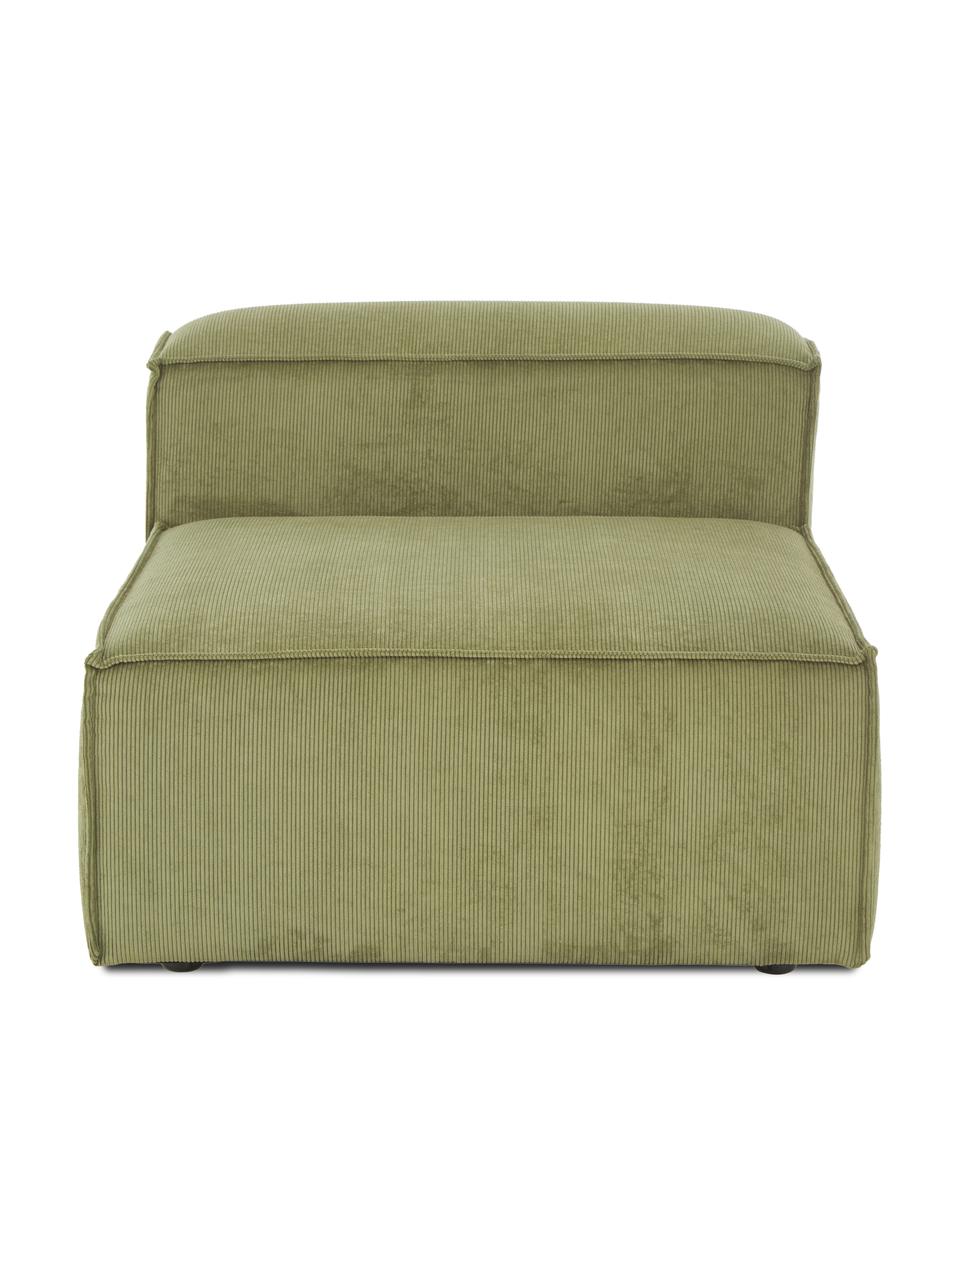 Chauffeuse pour canapé modulable en velours côtelé Lennon, Velours côtelé vert, larg. 89 x prof. 119 cm